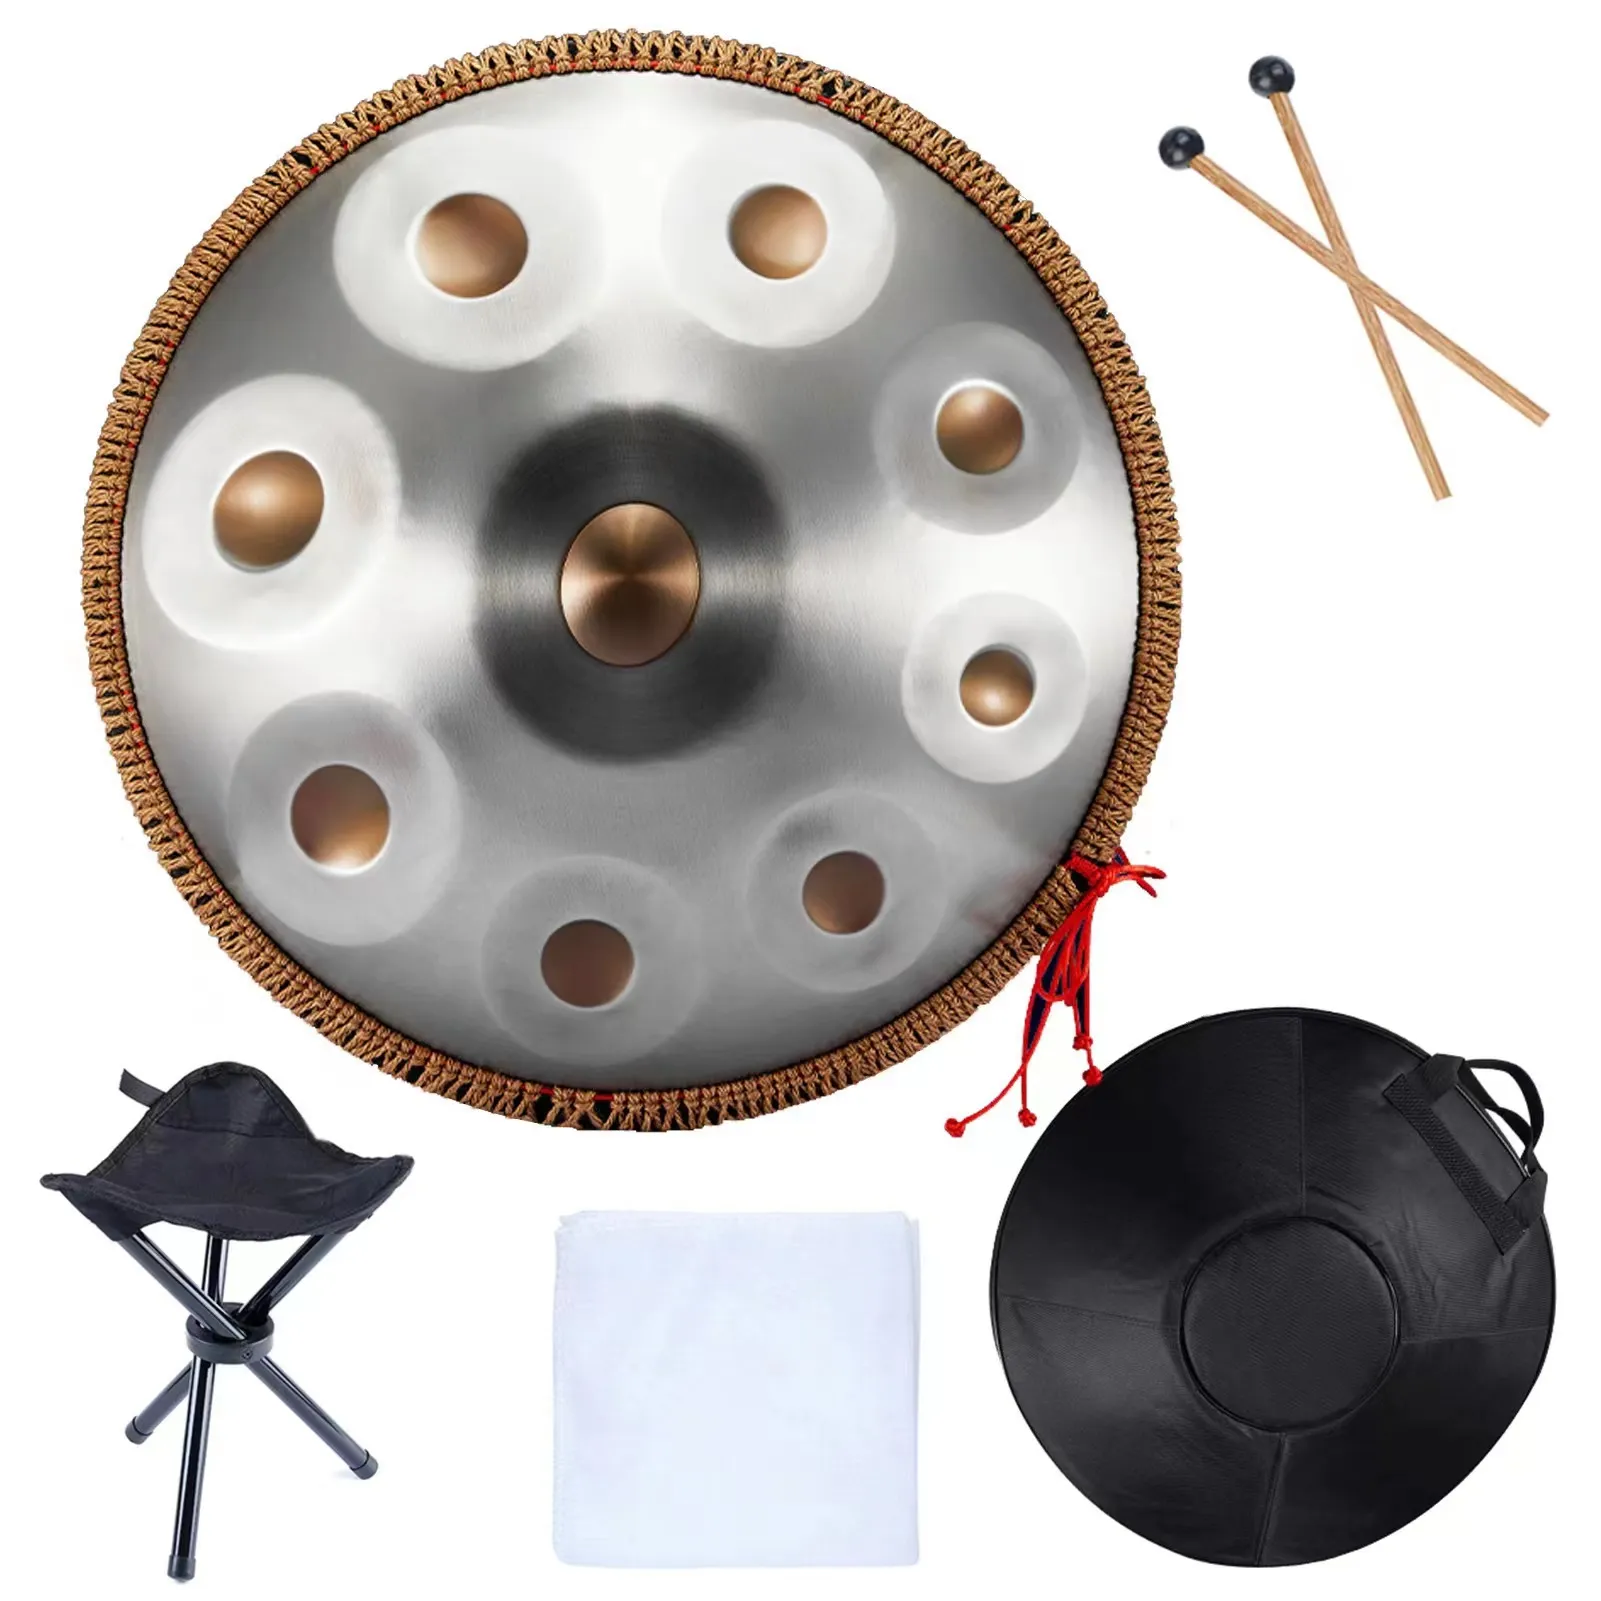 Nowe notatki 9/10 Authentic Handpan Professional Worr Free Drum Instrument dla talerza ds. Perkusyjnych początkujących